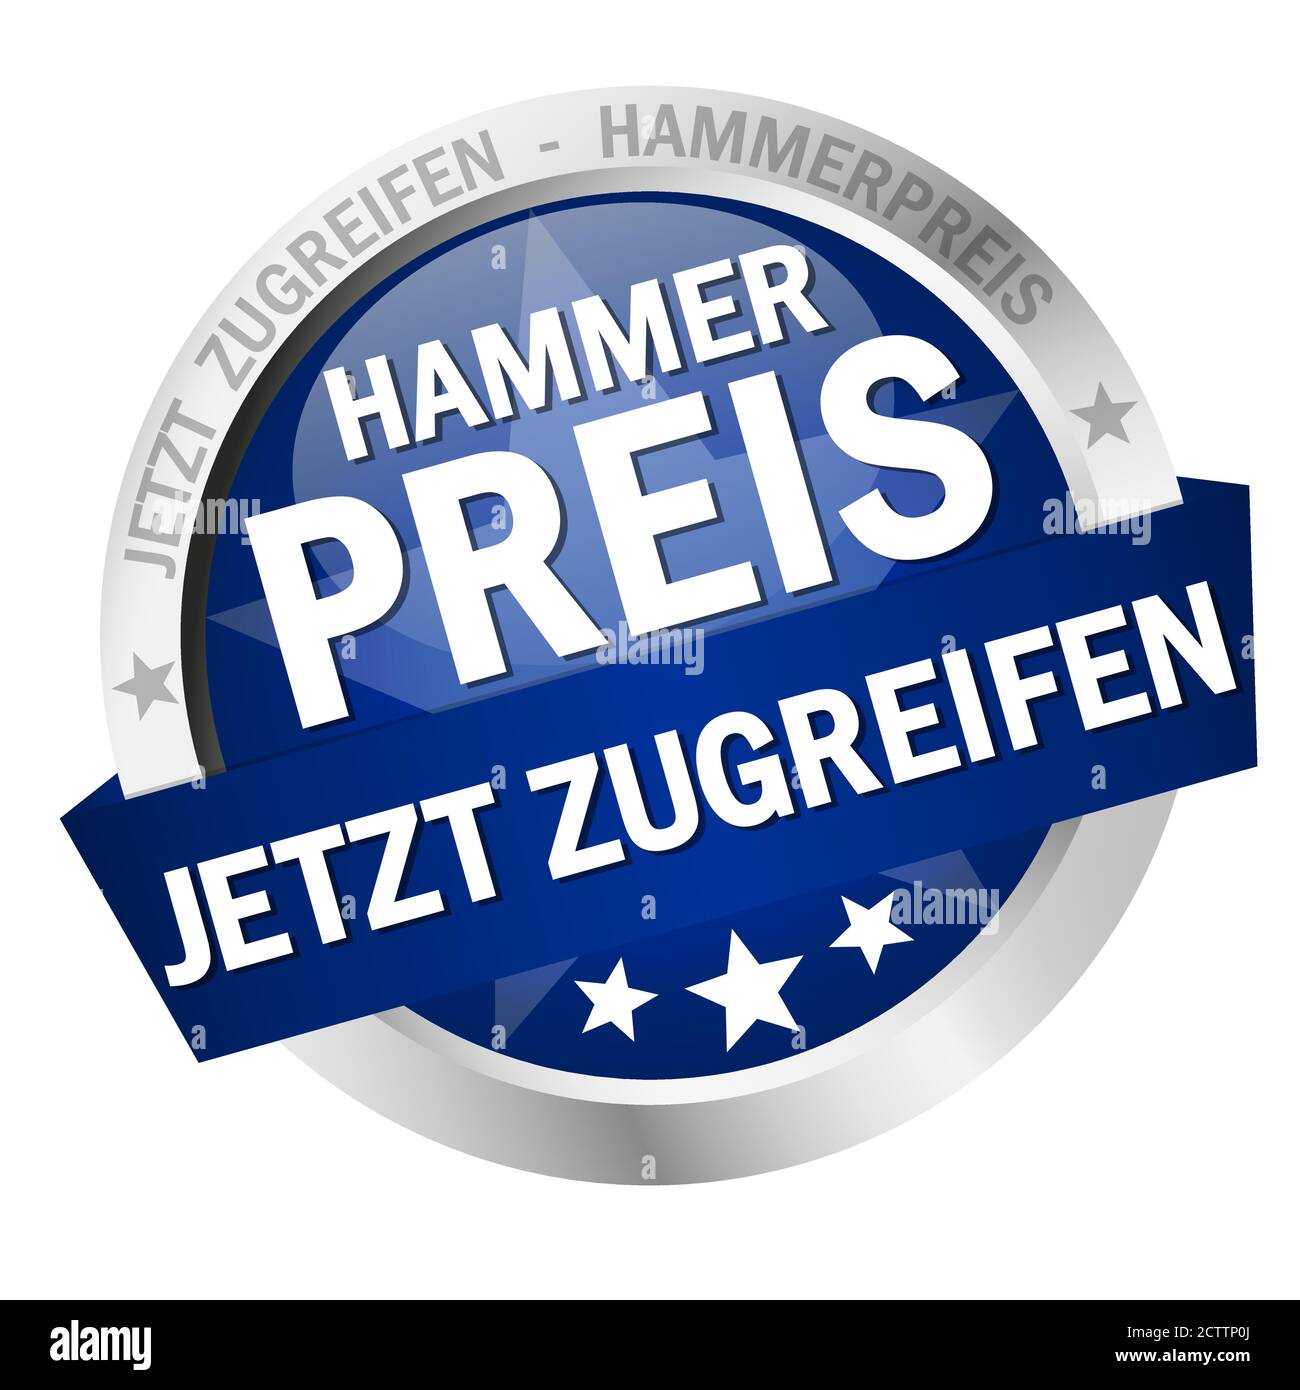 Bottone rotondo colorato con banner e testo Hammerpreis - jetzt zugreifen Illustrazione Vettoriale